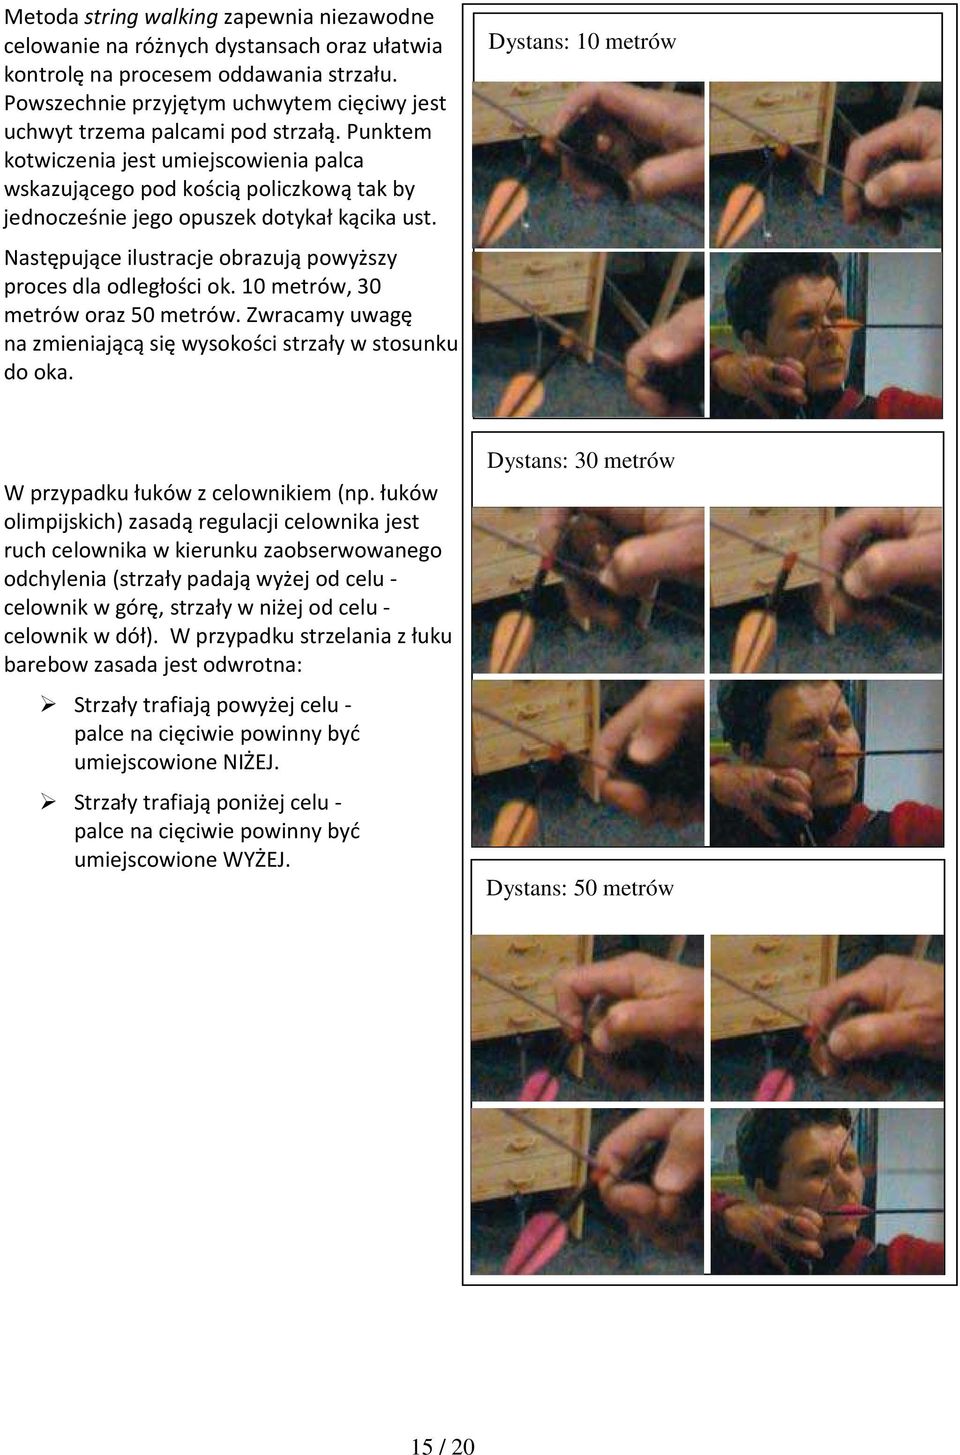 Punktem kotwiczenia jest umiejscowienia palca wskazującego pod kością policzkową tak by jednocześnie jego opuszek dotykał kącika ust. Następujące ilustracje obrazują powyższy proces dla odległości ok.